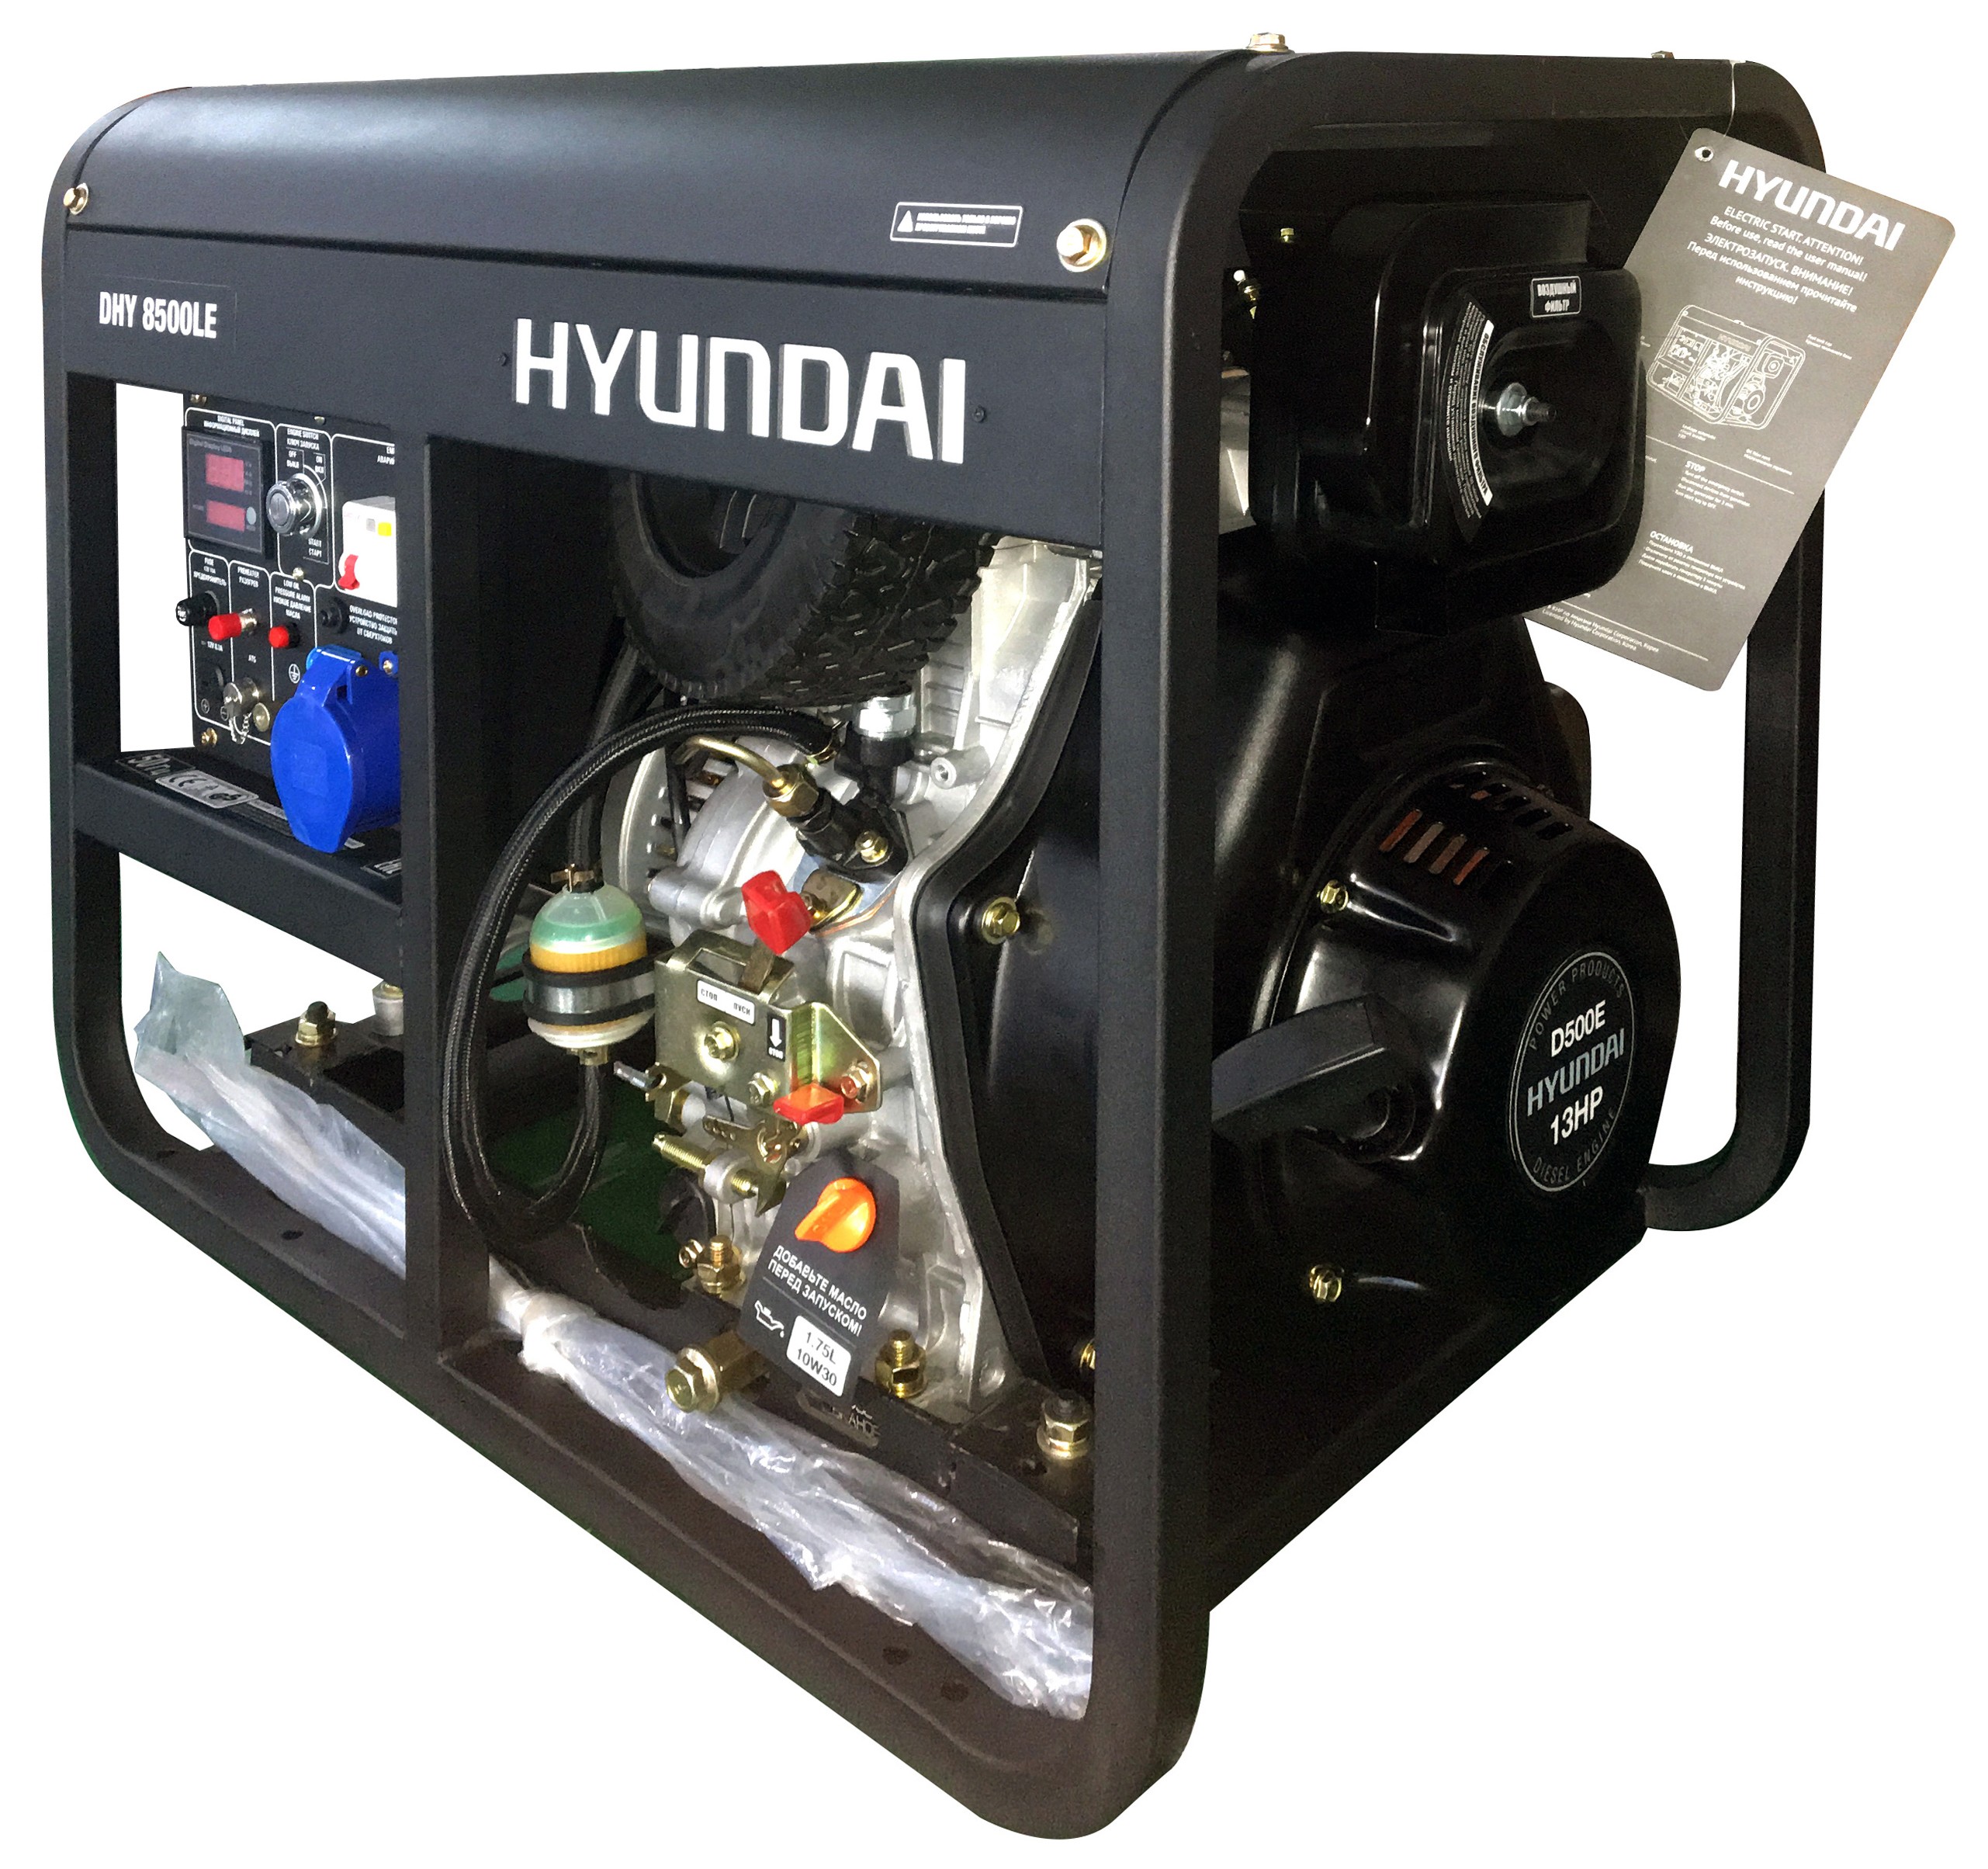 Дизельный генератор Hyundai DHY 8500LE дизельный генератор hyundai dhy 8500 se 3